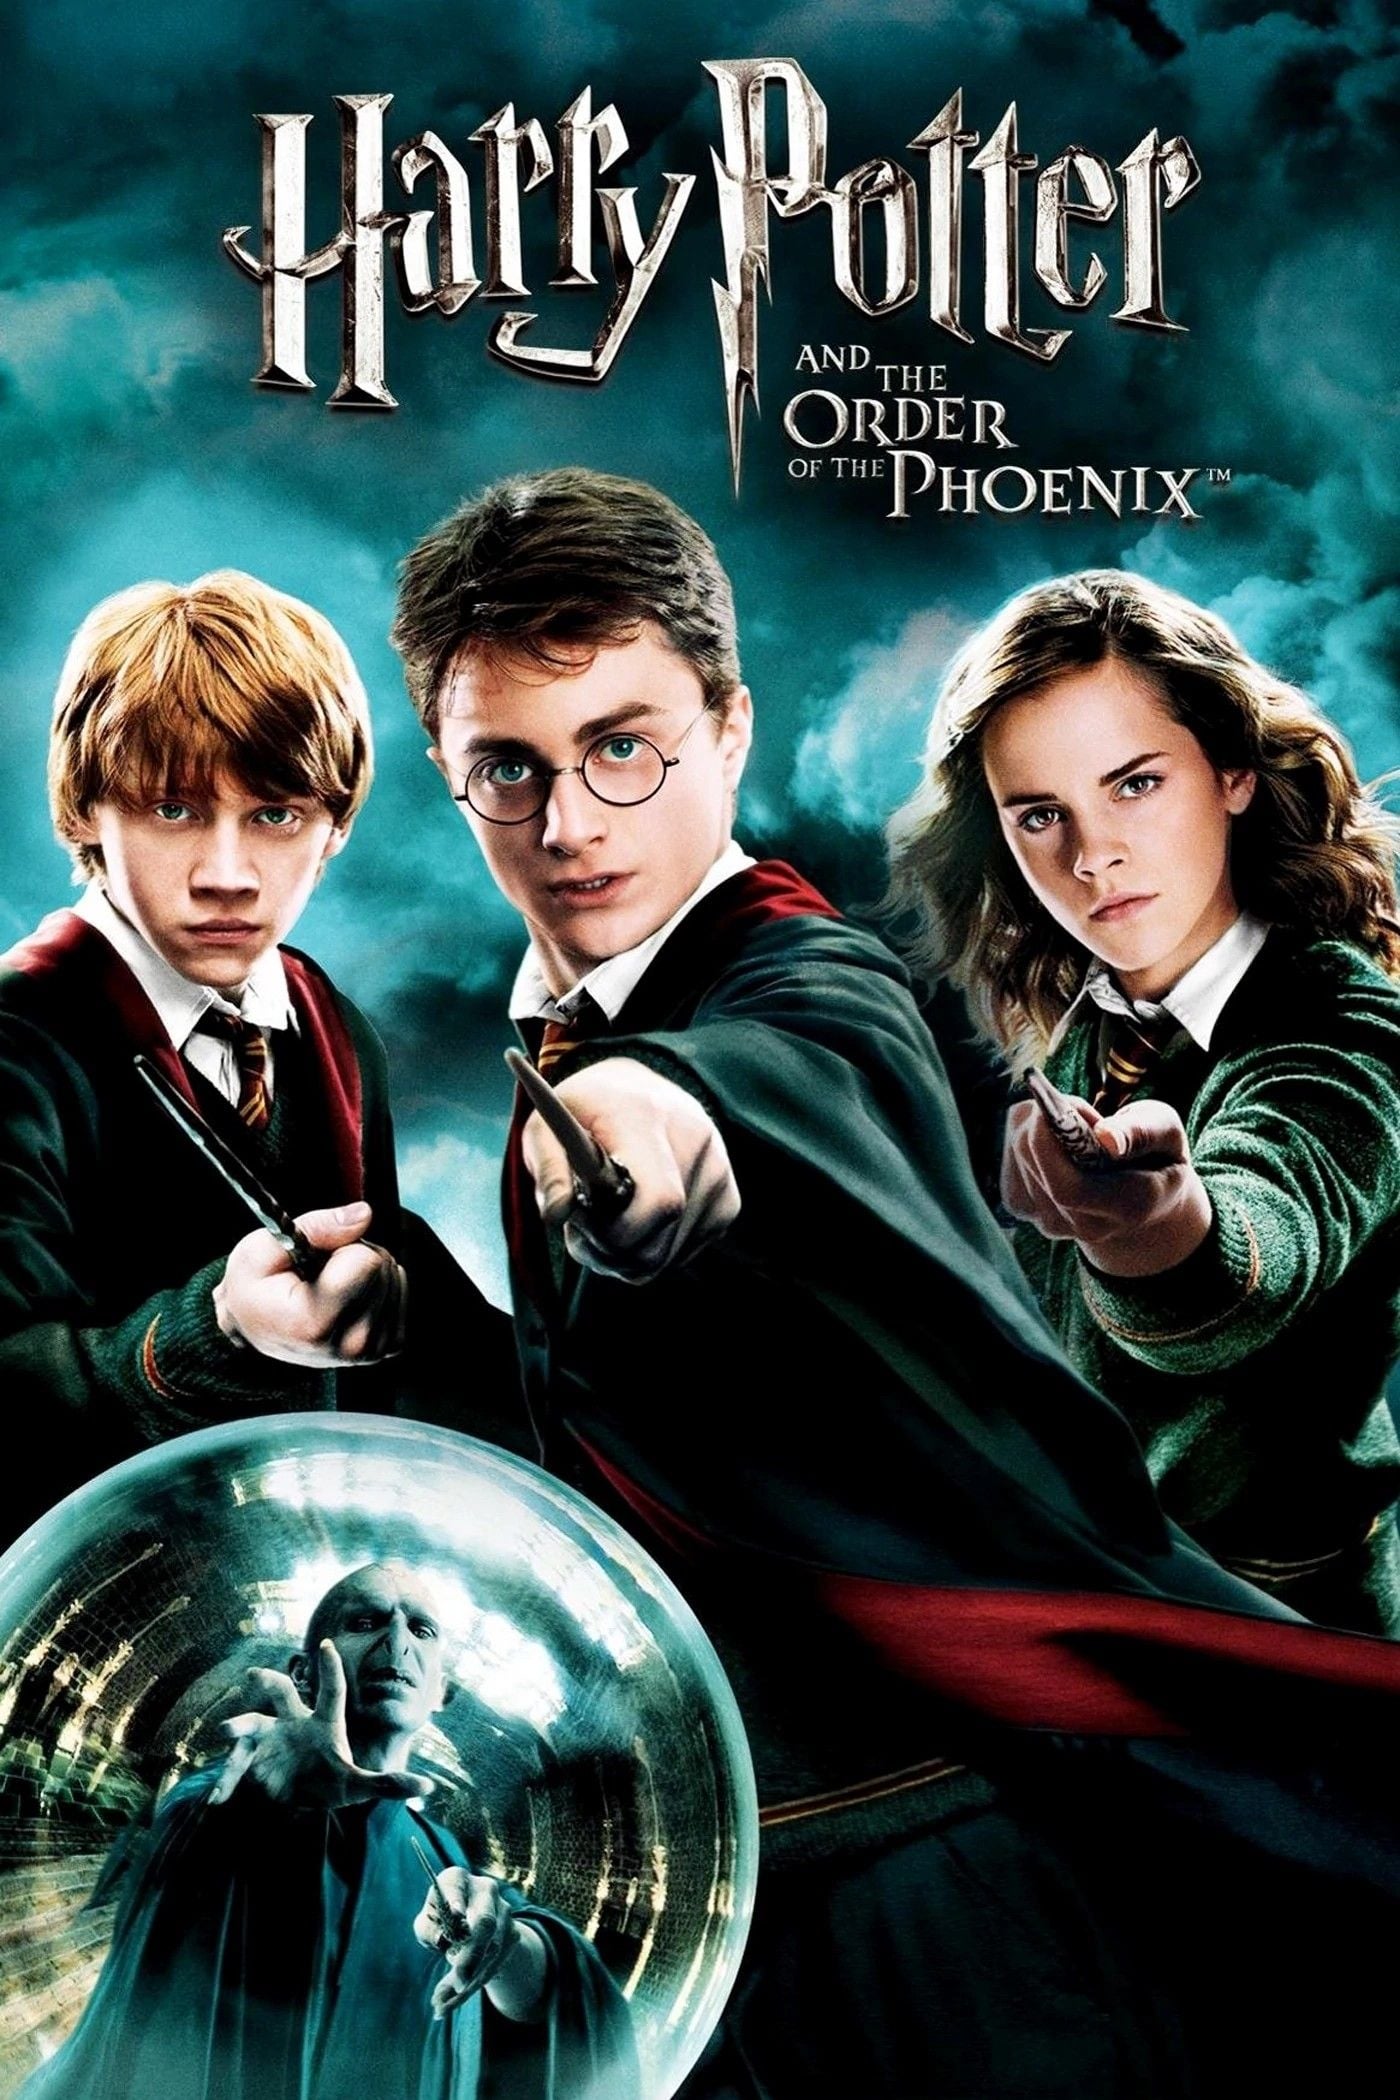 Harry Potter und der Orden des Phönix (2007)